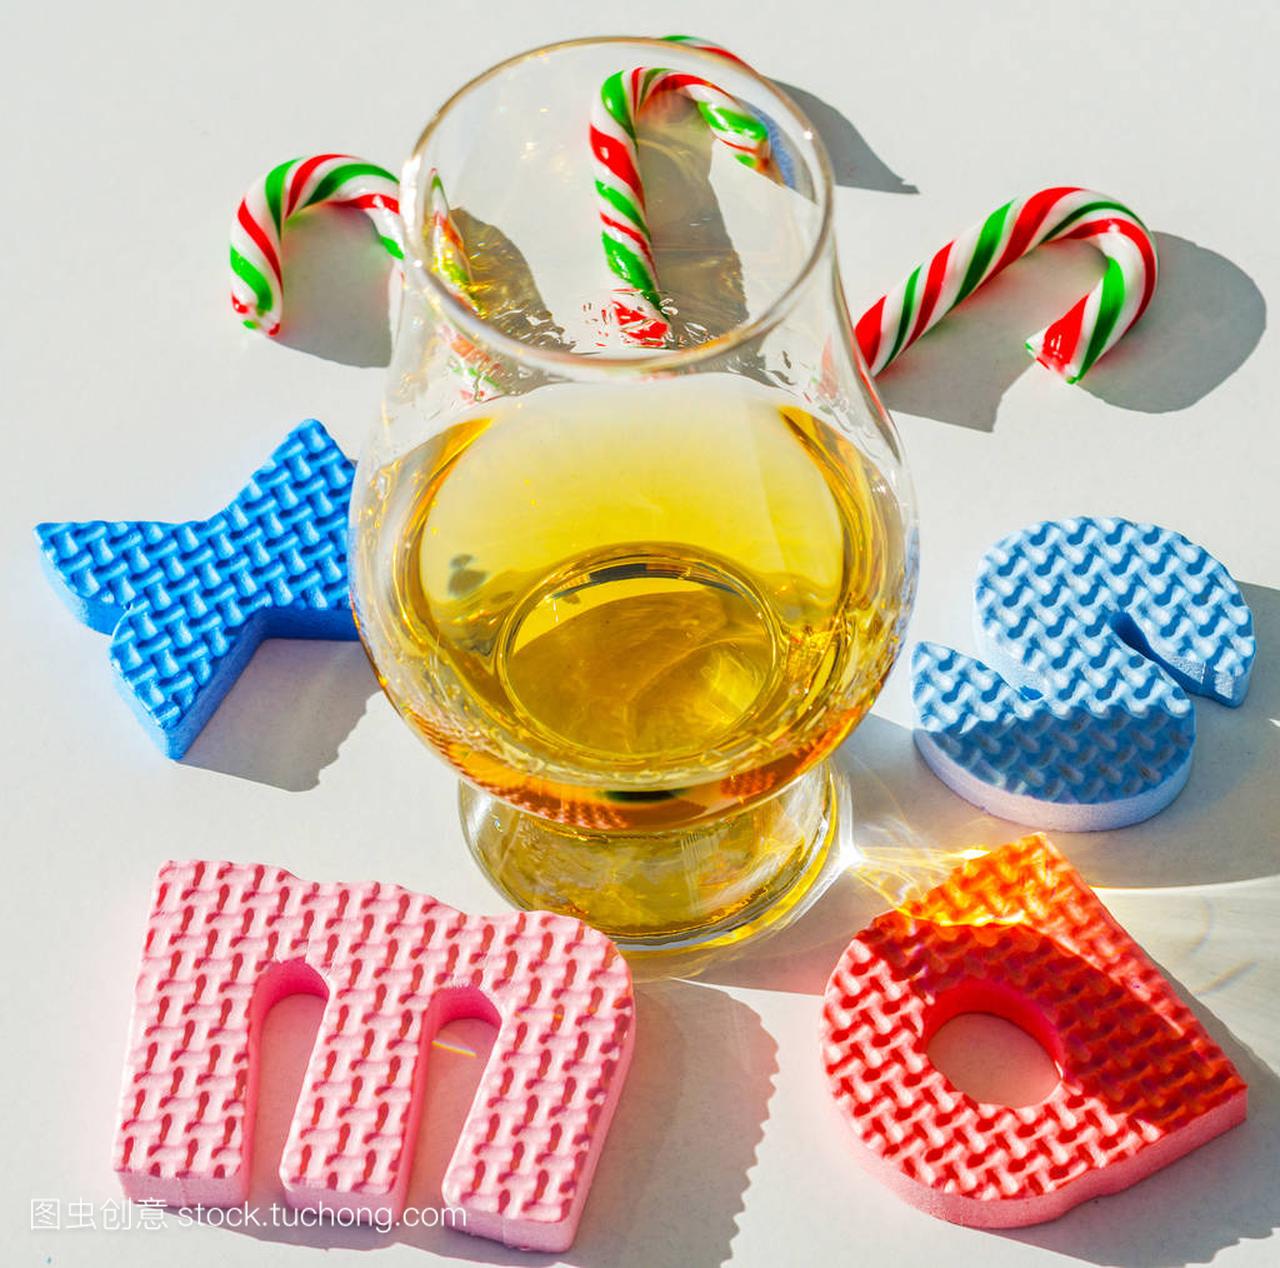 单麦芽威士忌在玻璃与橡胶字母, 圣诞节 inscr